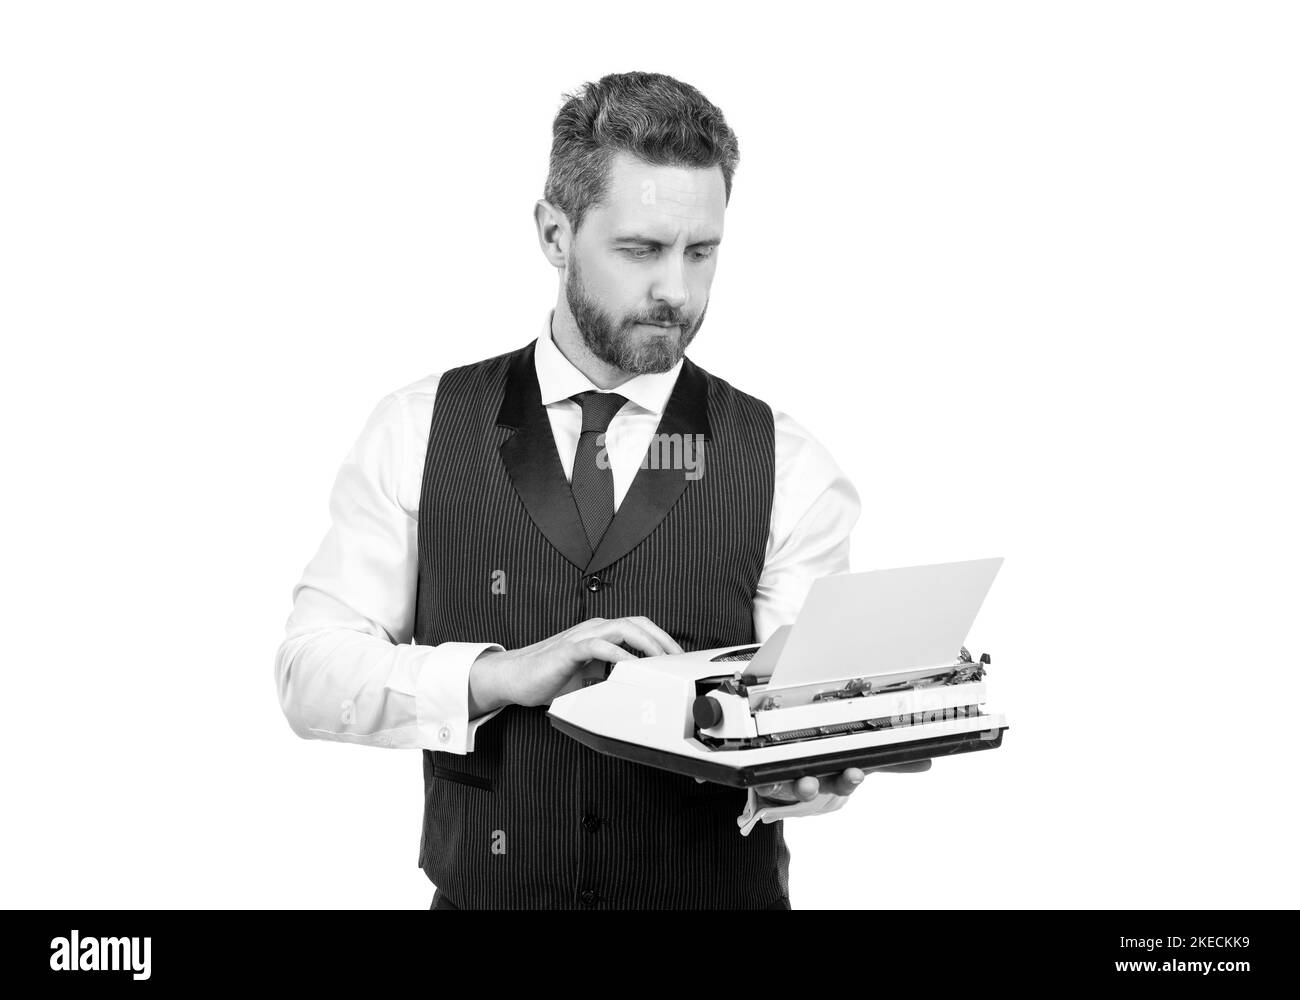 homme occupé à taper sur une machine à écrire vintage. homme d'affaires avec une machine à écrire rétro. auteur dactylographe Banque D'Images